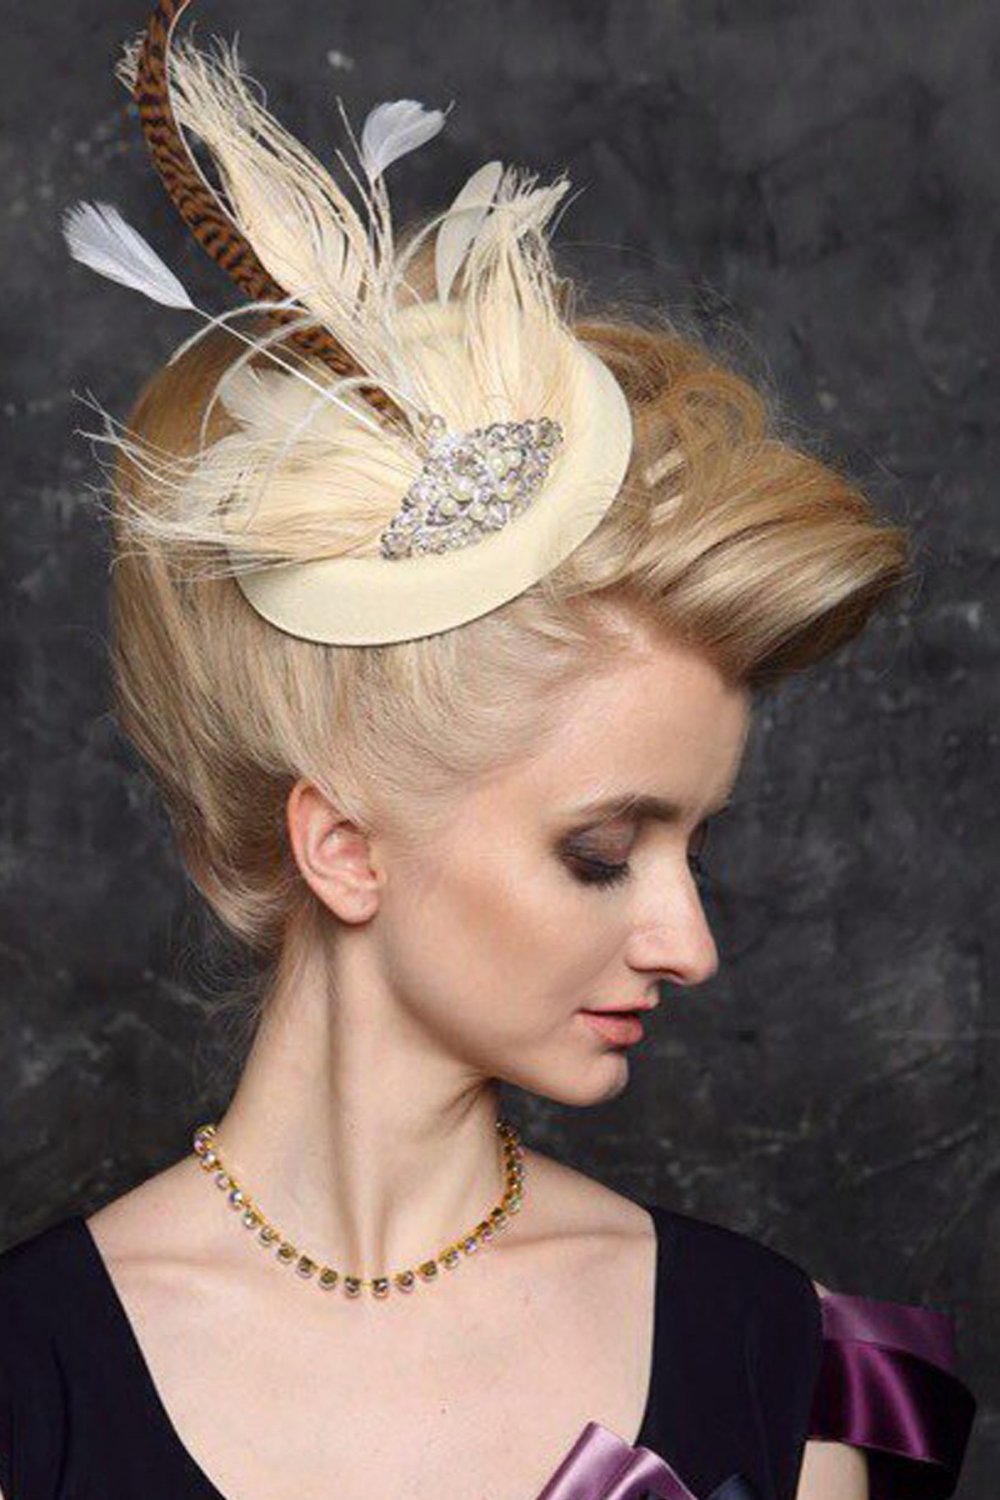 Шляпка с перьями
http://www.fashion-piart.ru/catalog/Vualetki_aksessuary_dlya_volos_svadebnye/